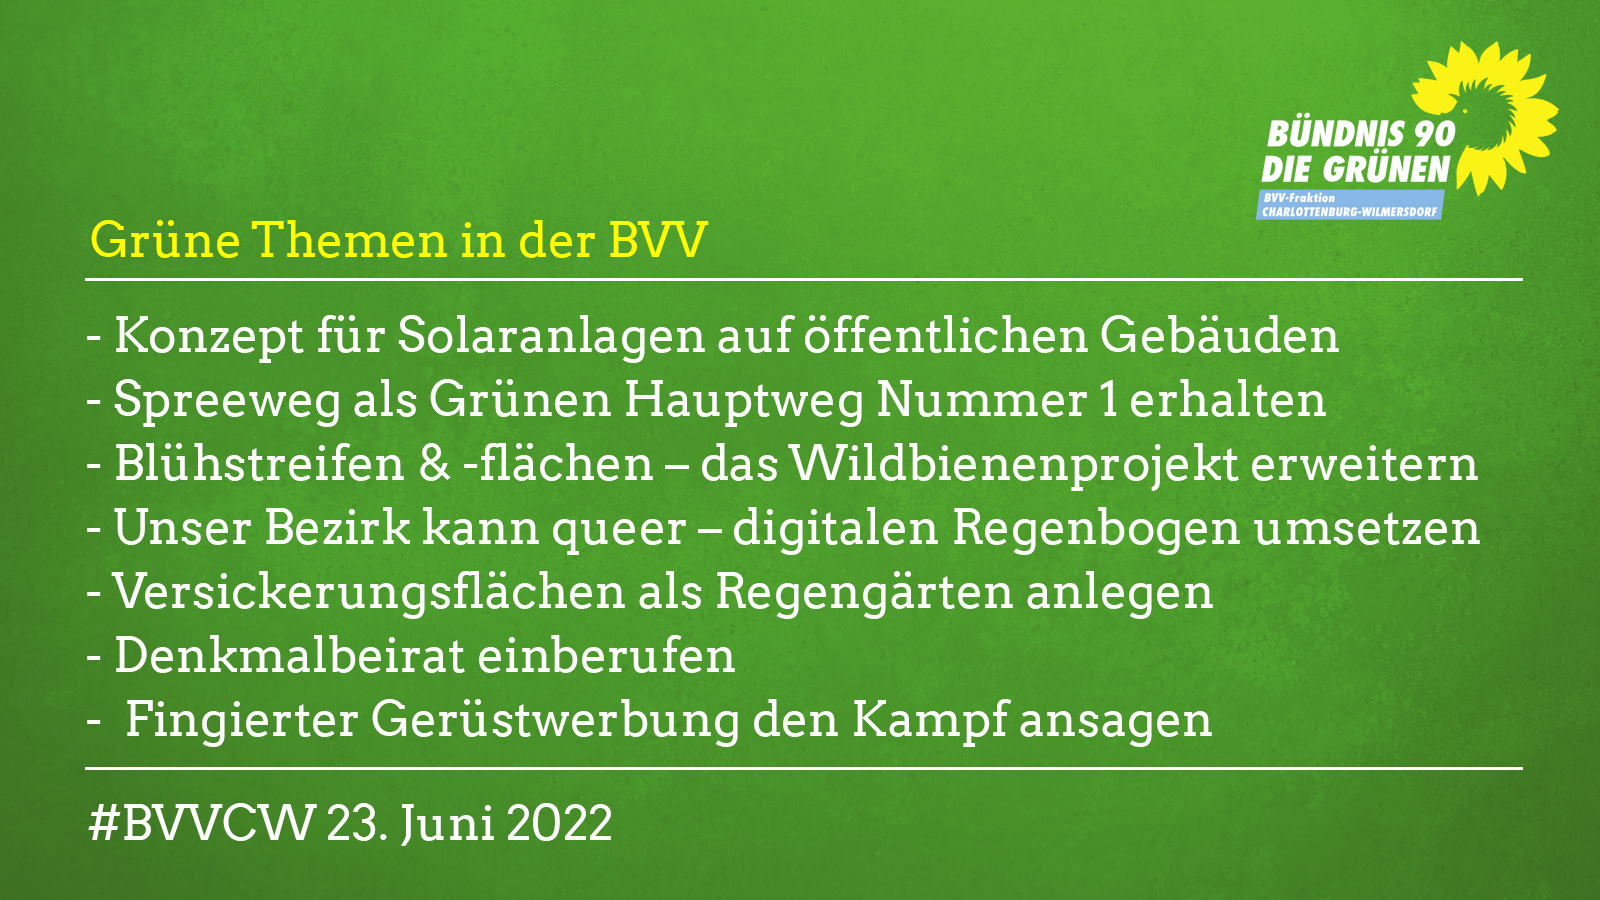 Grüne Themen in der BVV am 23. Juni 2022